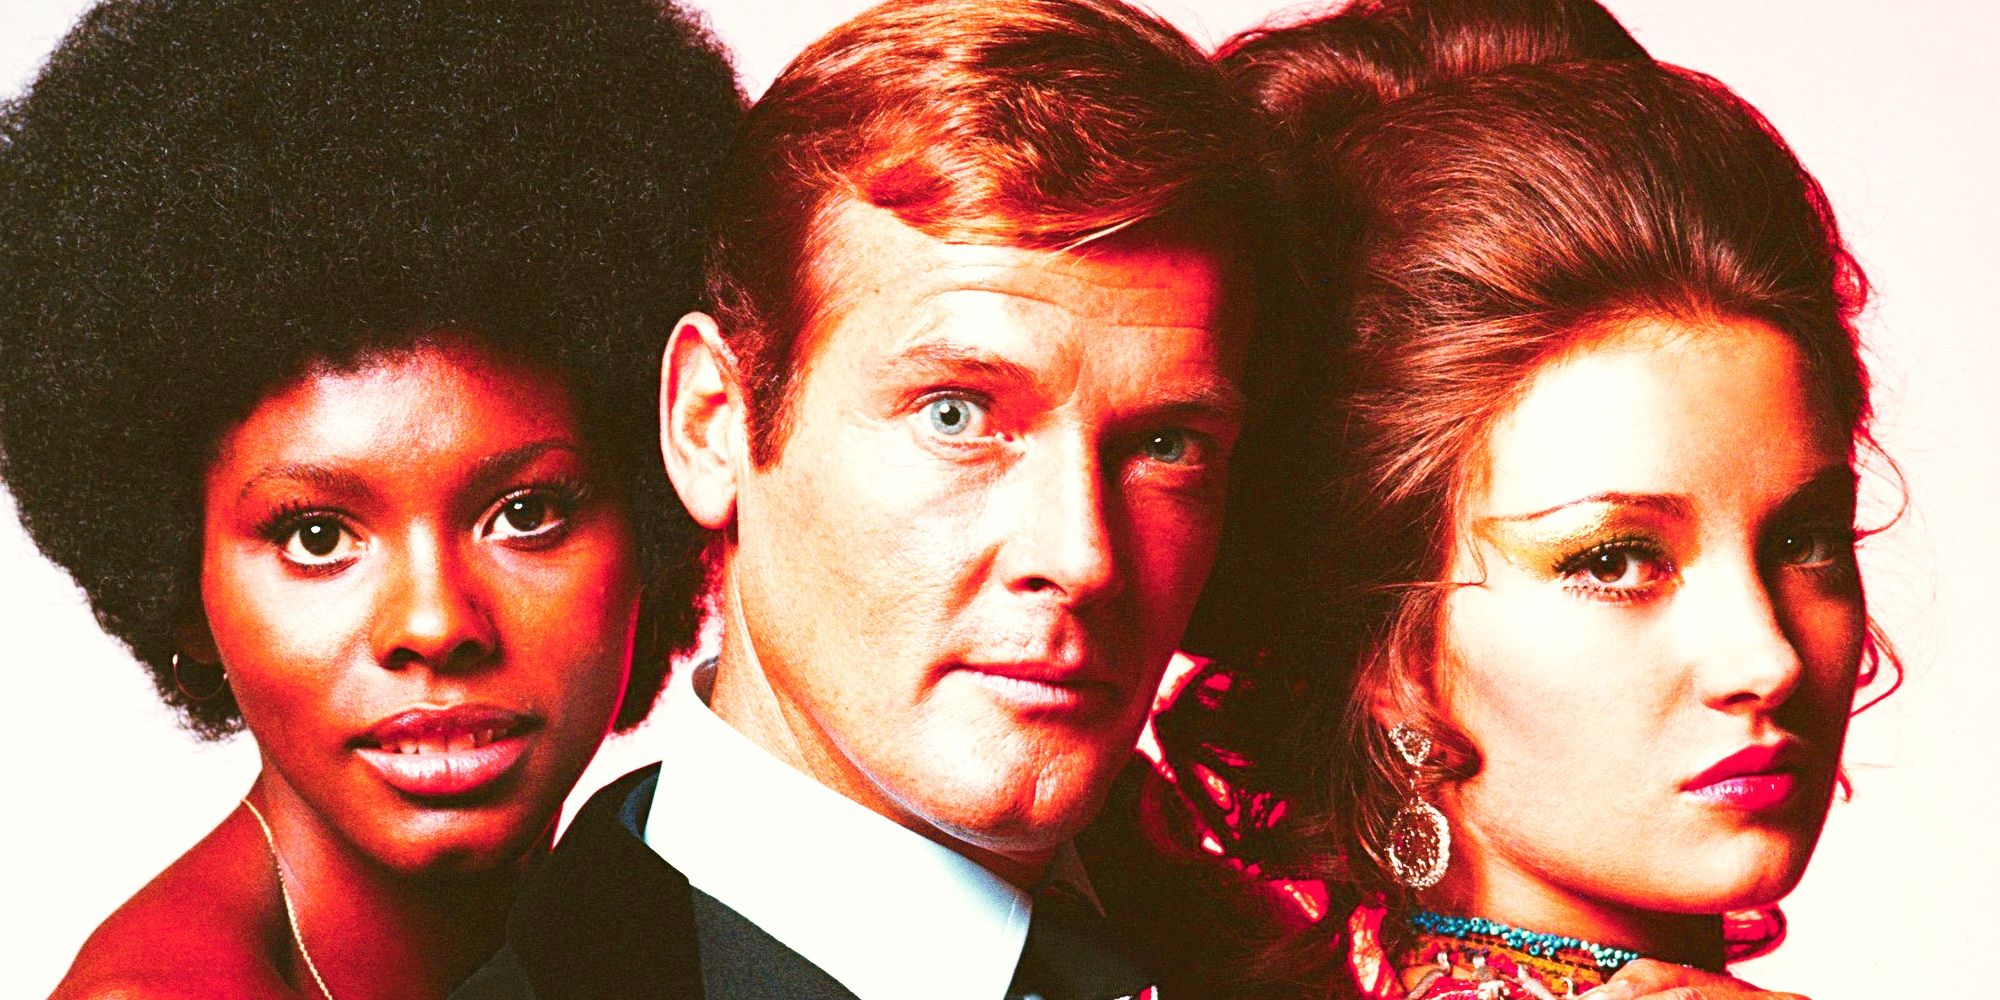 La primera película de James Bond de Roger Moore rompió una tendencia importante 007